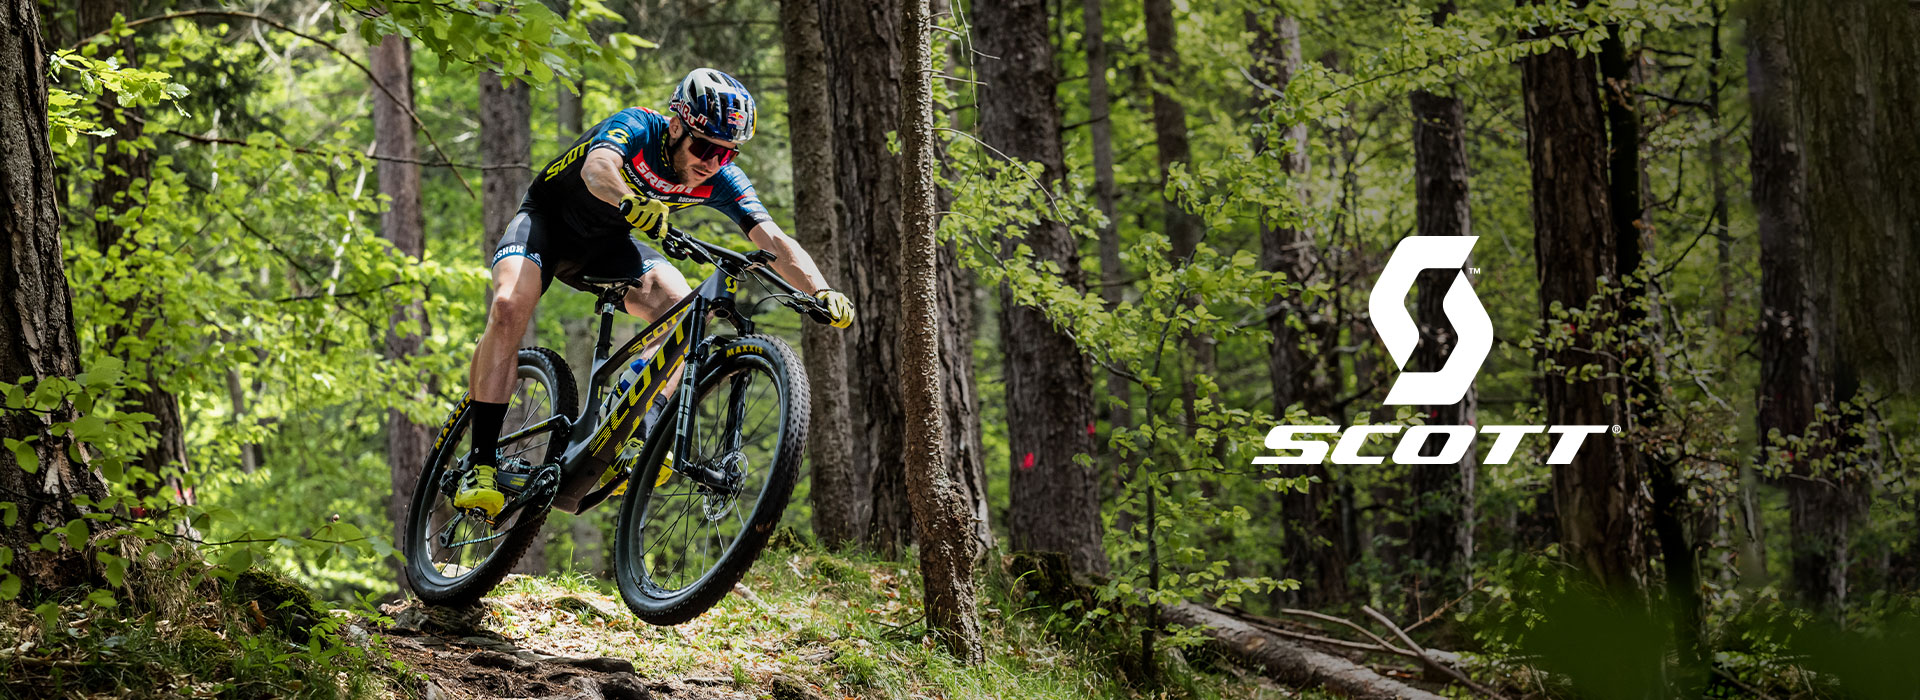 Scott es una marca norteamericana-suiza que produce equipo especializado para ciclismo y running. Fueron los creadores de productos innovadores, la primera MTB de doble suspensión y el bloqueo de suspensión Twin-Lock. Hoy en día cuenta con una alta gama de bicicletas y accesorios para MTB y ruta, así como trail running.